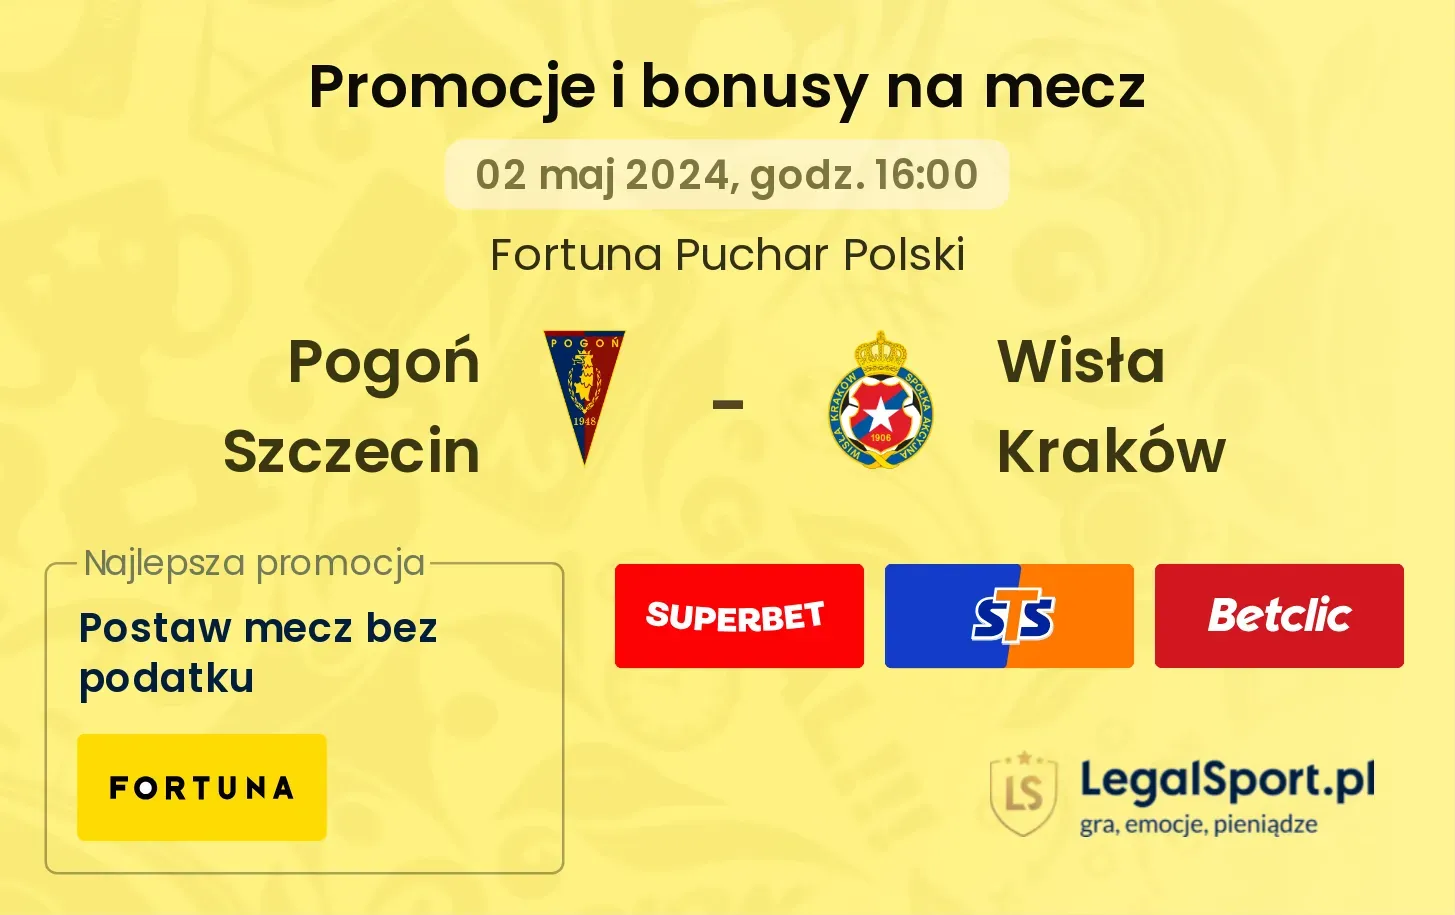 Pogoń Szczecin - Wisła Kraków promocje bonusy na mecz